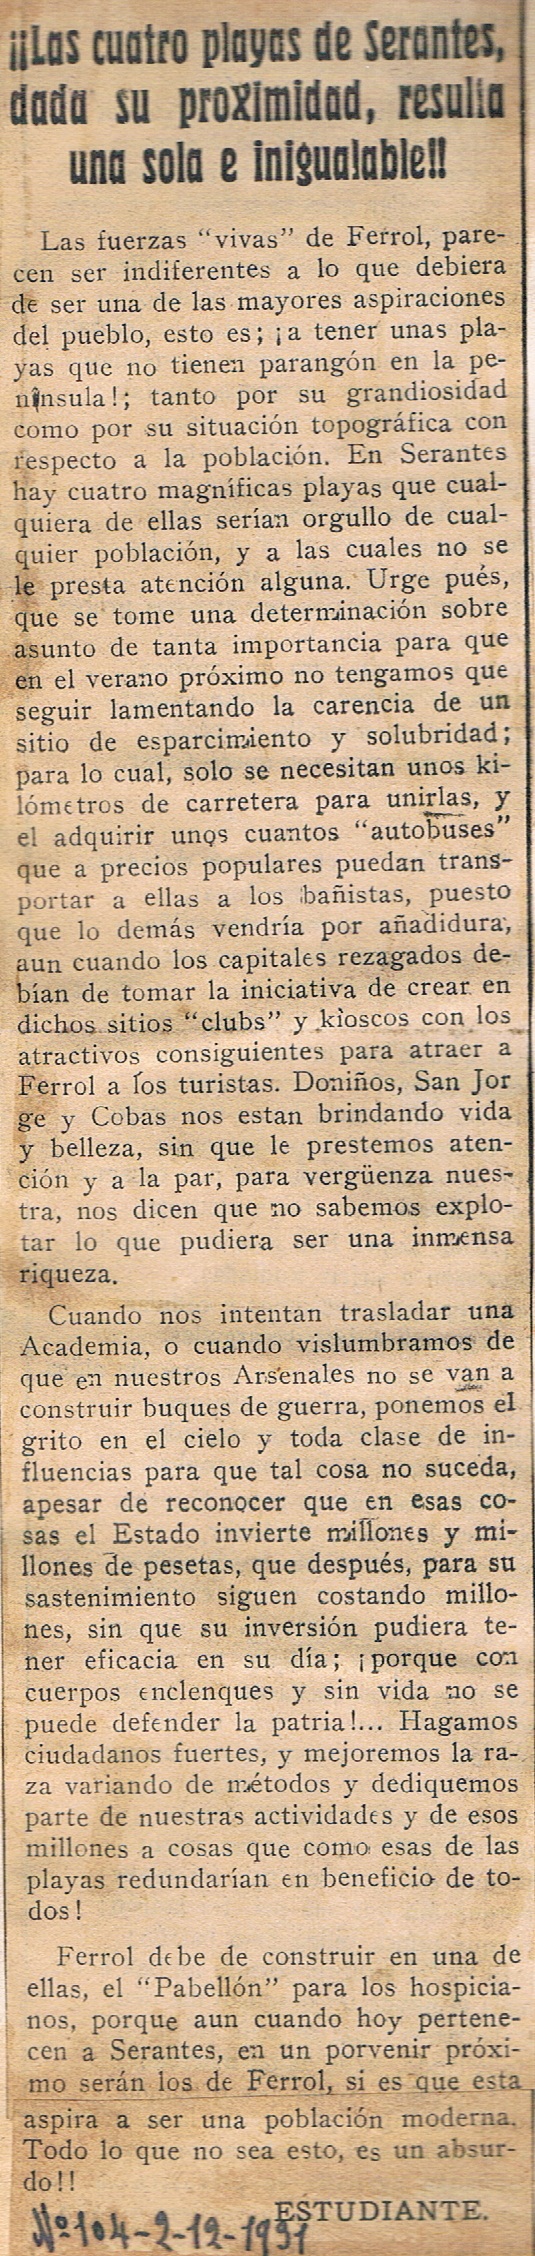 La Libertad 02-12-1931. Nº 104 (Alejandro Porto Leis)